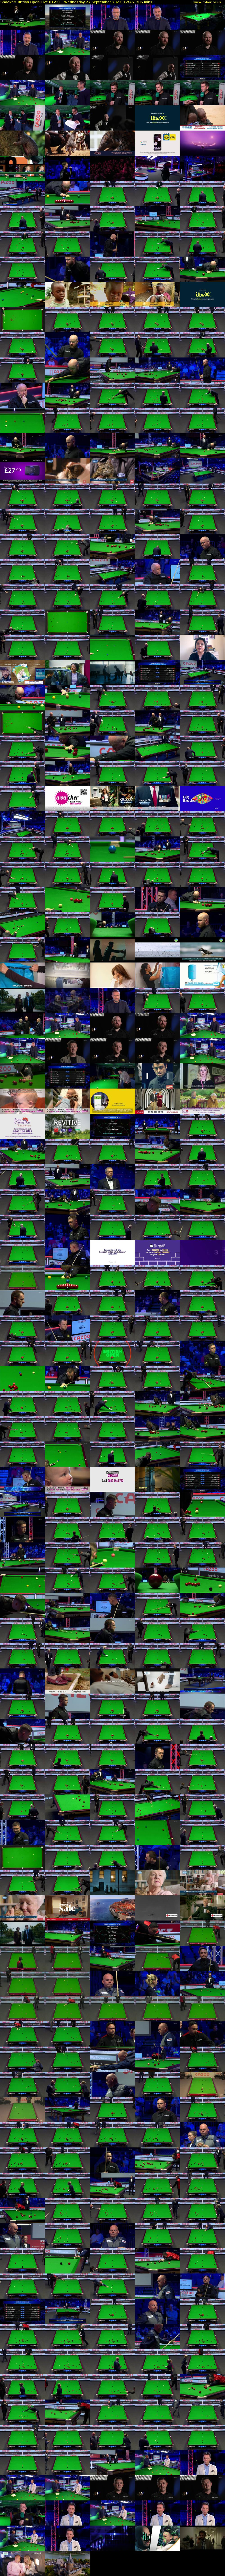 Snooker: British Open Live (ITV3) Wednesday 27 September 2023 12:45 - 17:30